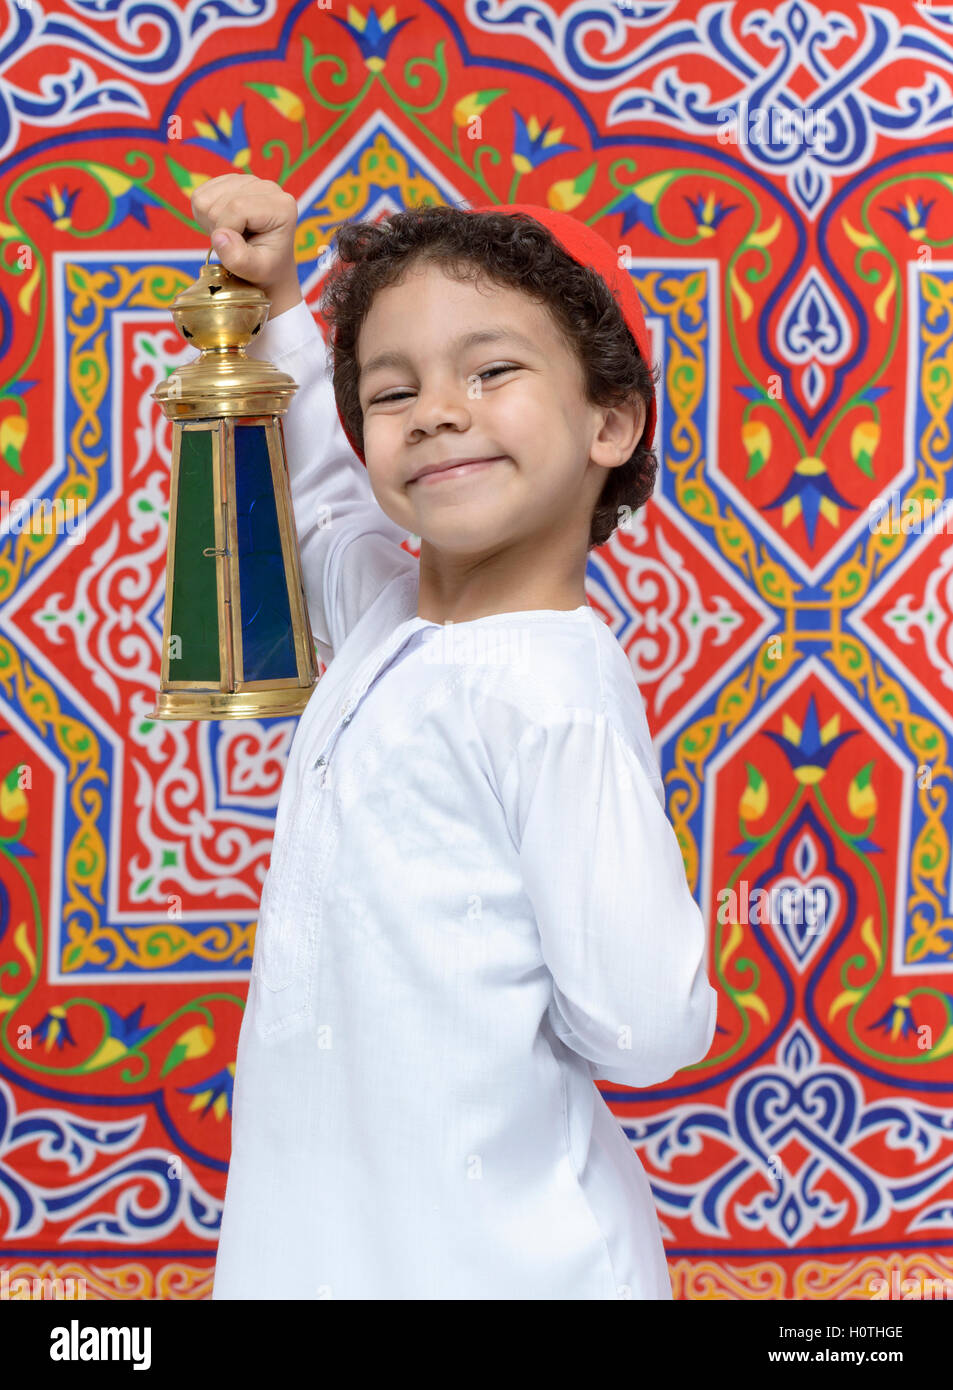 Jeune garçon arabe célébrer le Ramadan avec lanterne Banque D'Images